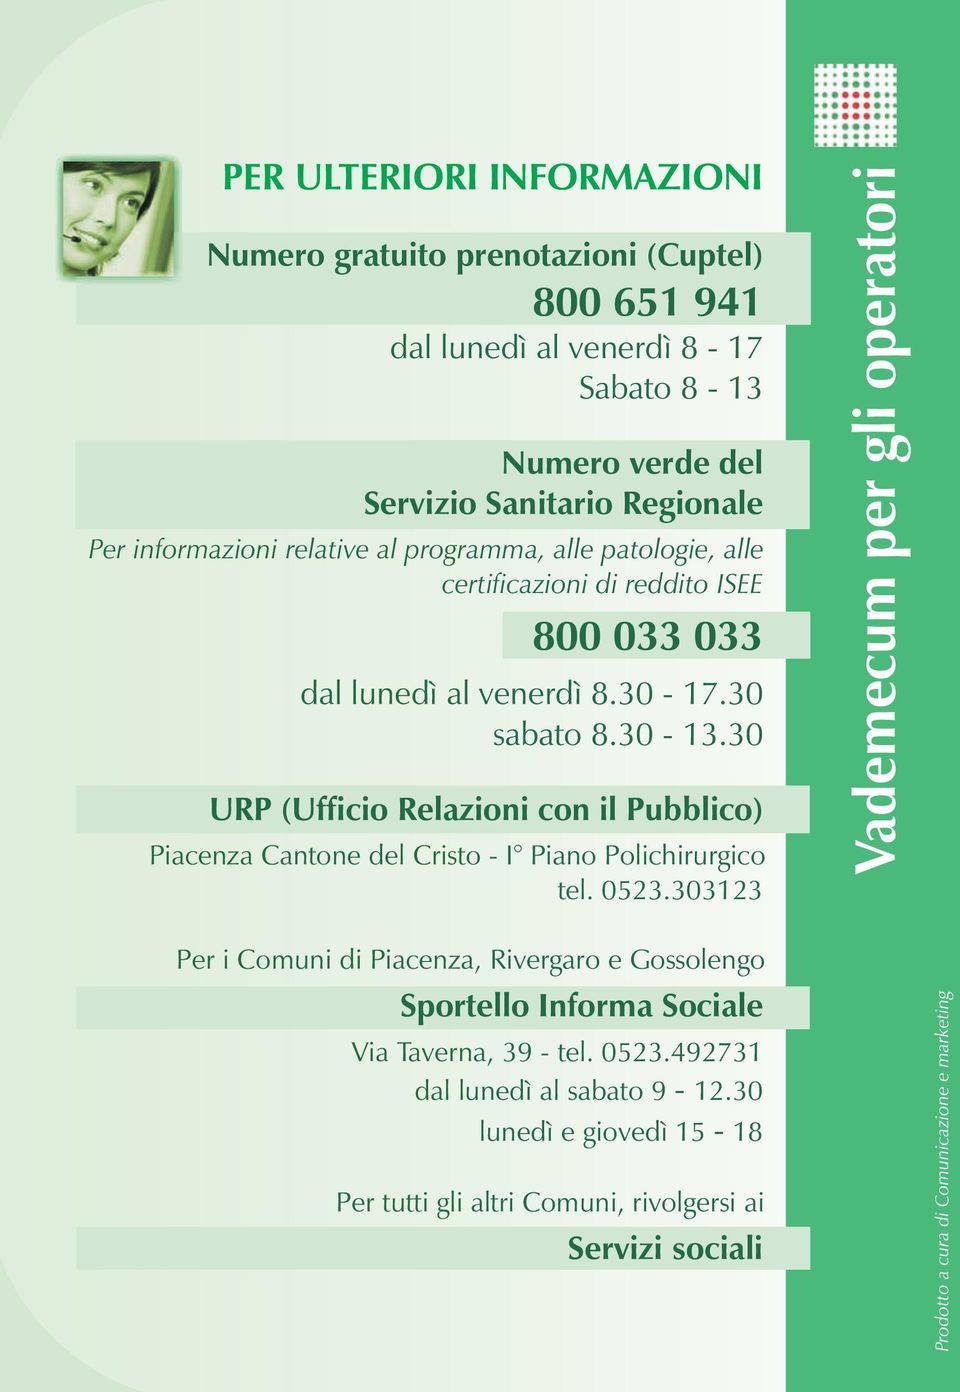 30 URP (Ufficio Relazioni con il Pubblico) Piacenza Cantone del Cristo - I Piano Polichirurgico tel. 0523.